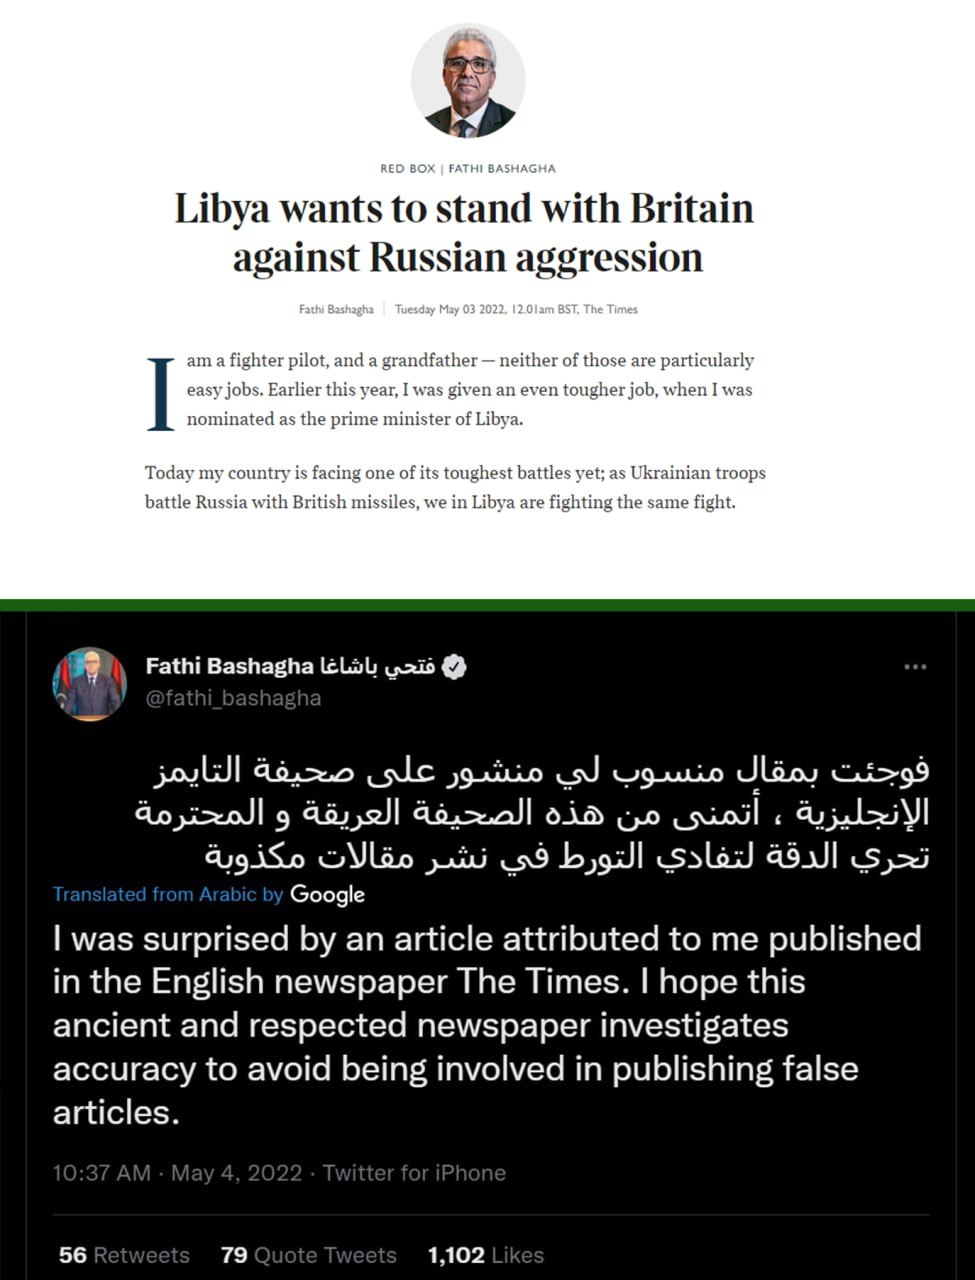 Фейк: желание Ливии сотрудничать с Великобританией, против России